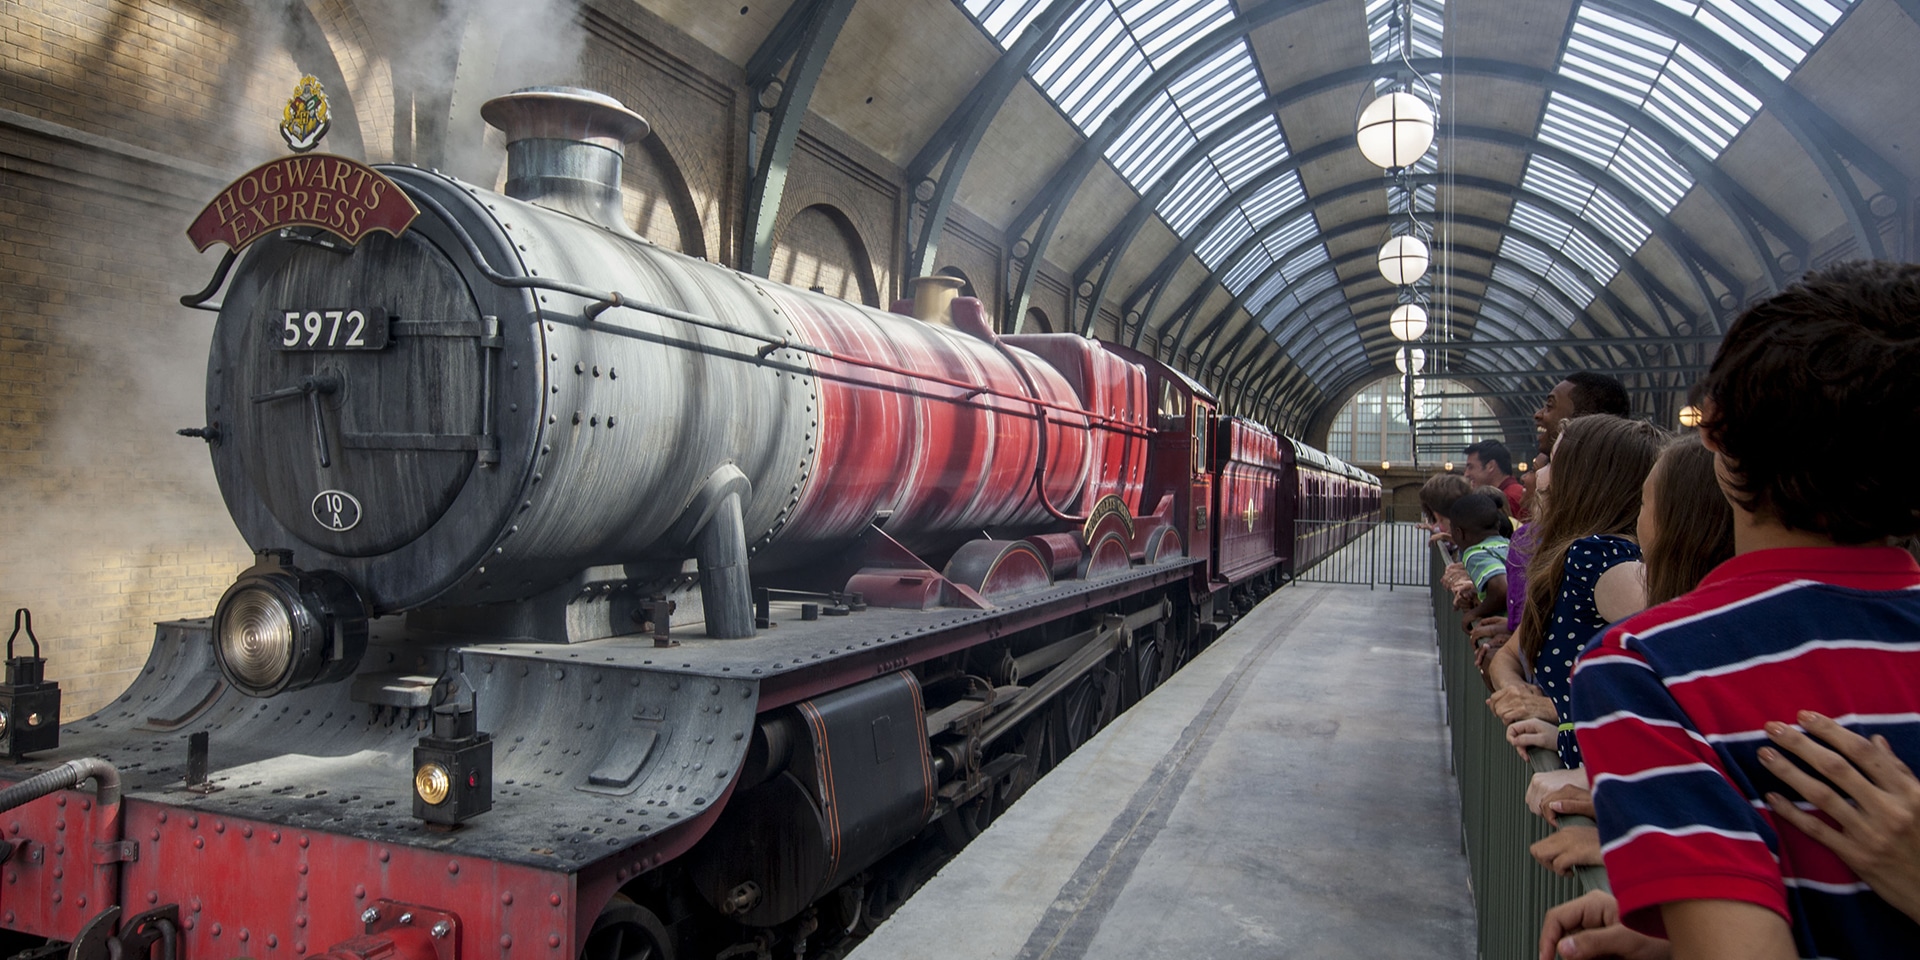 Hogwarts Express: Platform Nine and Three Quarters.